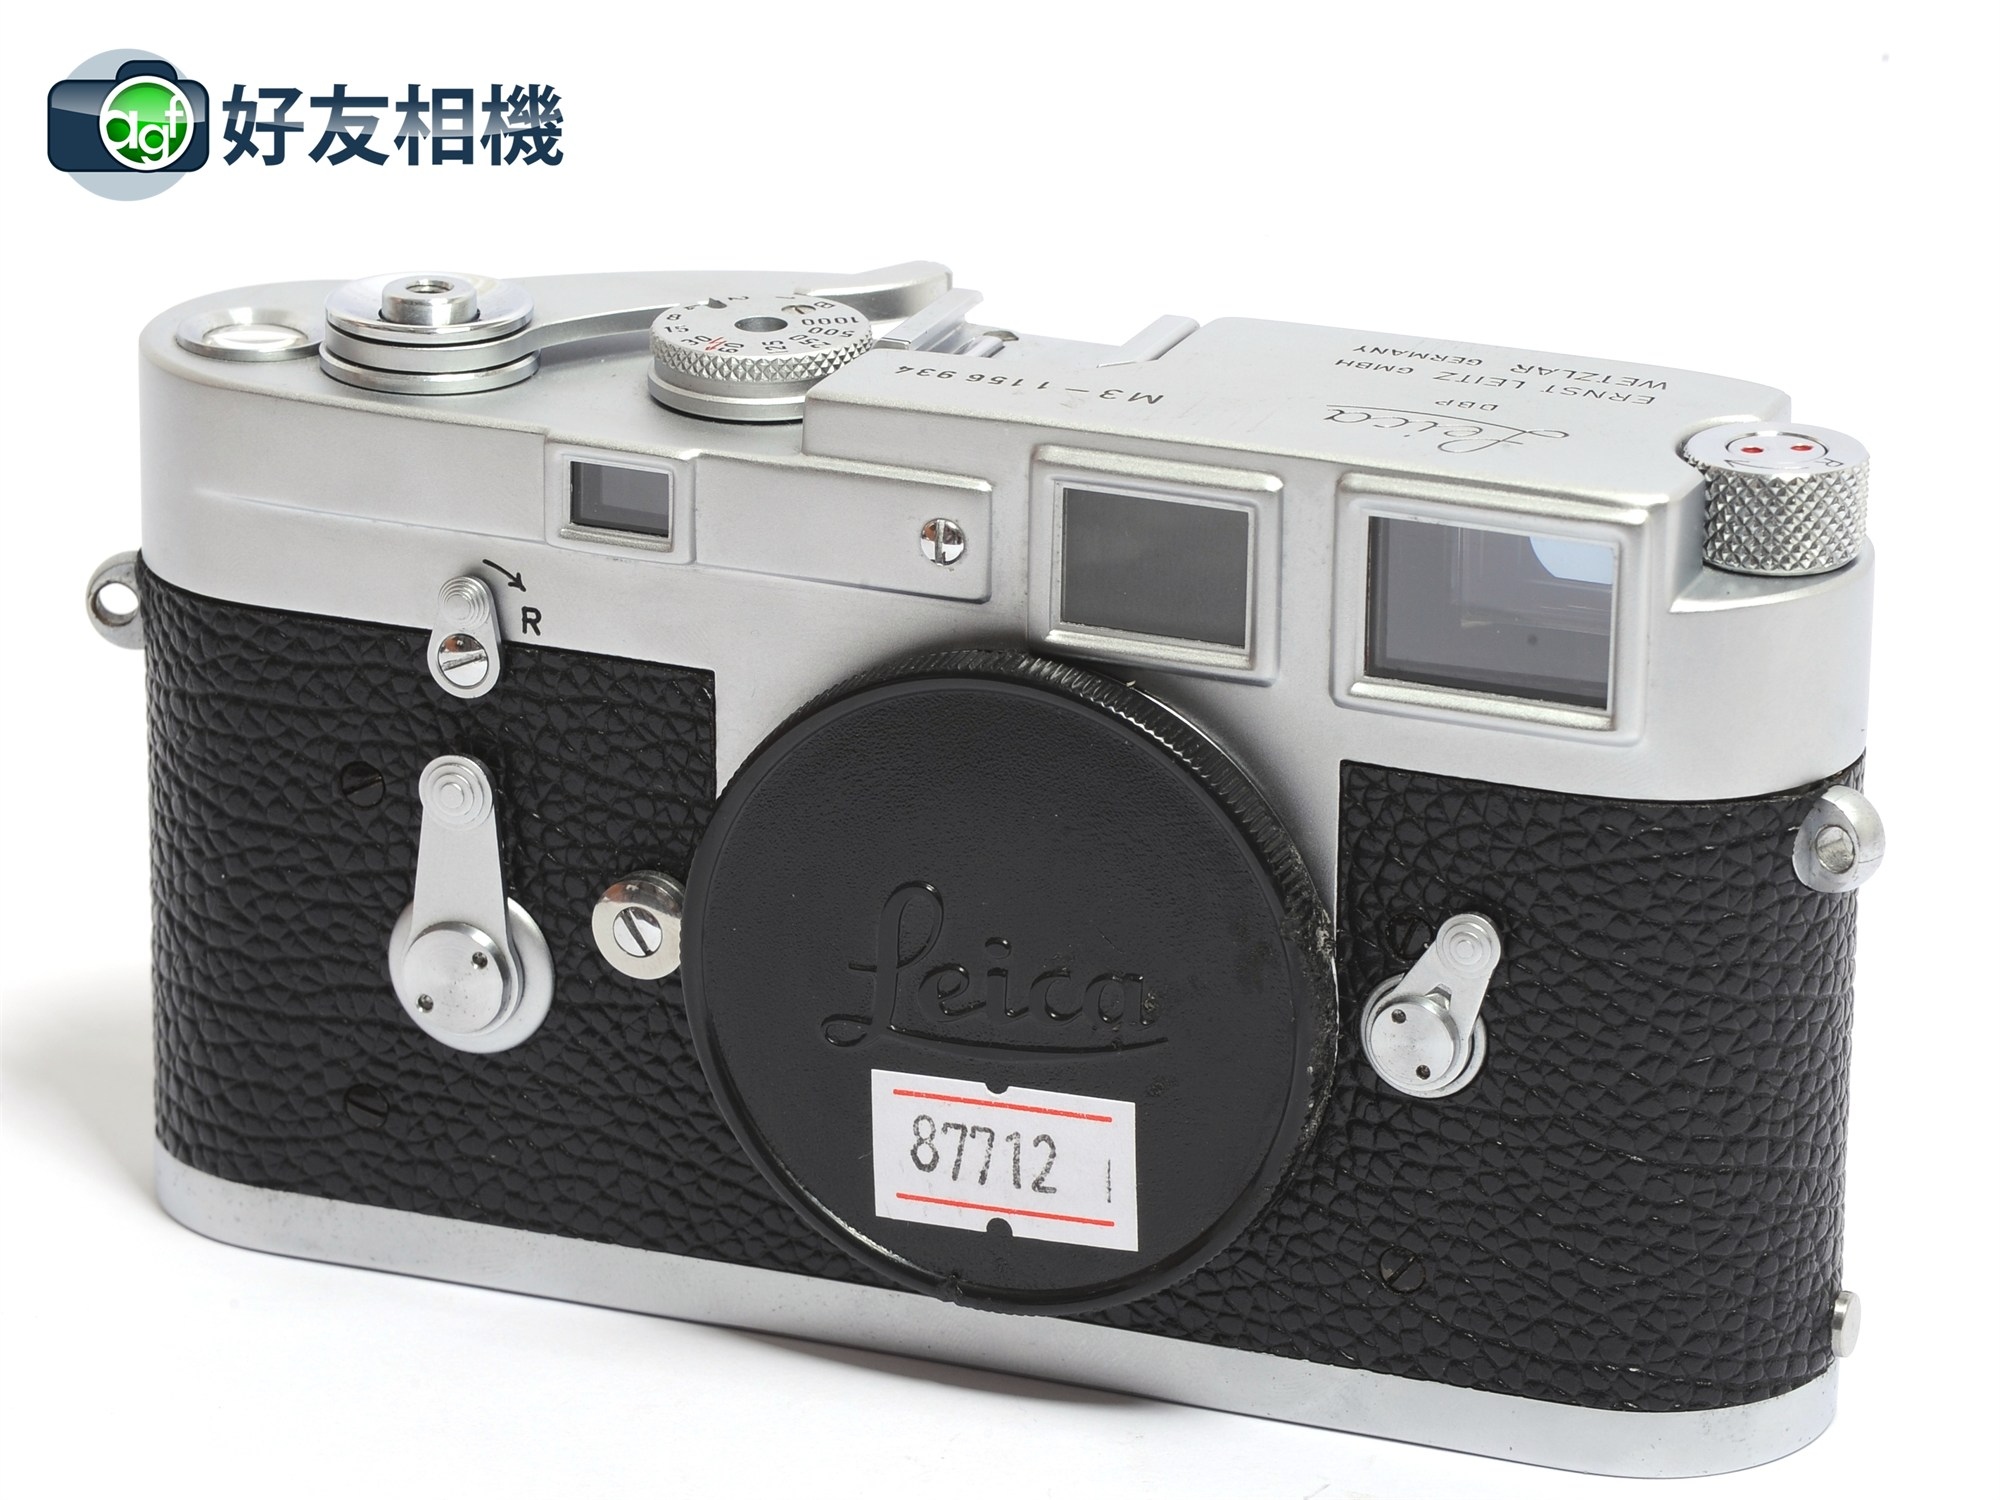 徕卡/Leica M3 單撥 经典旁轴相机 胶片机 银色*95新*